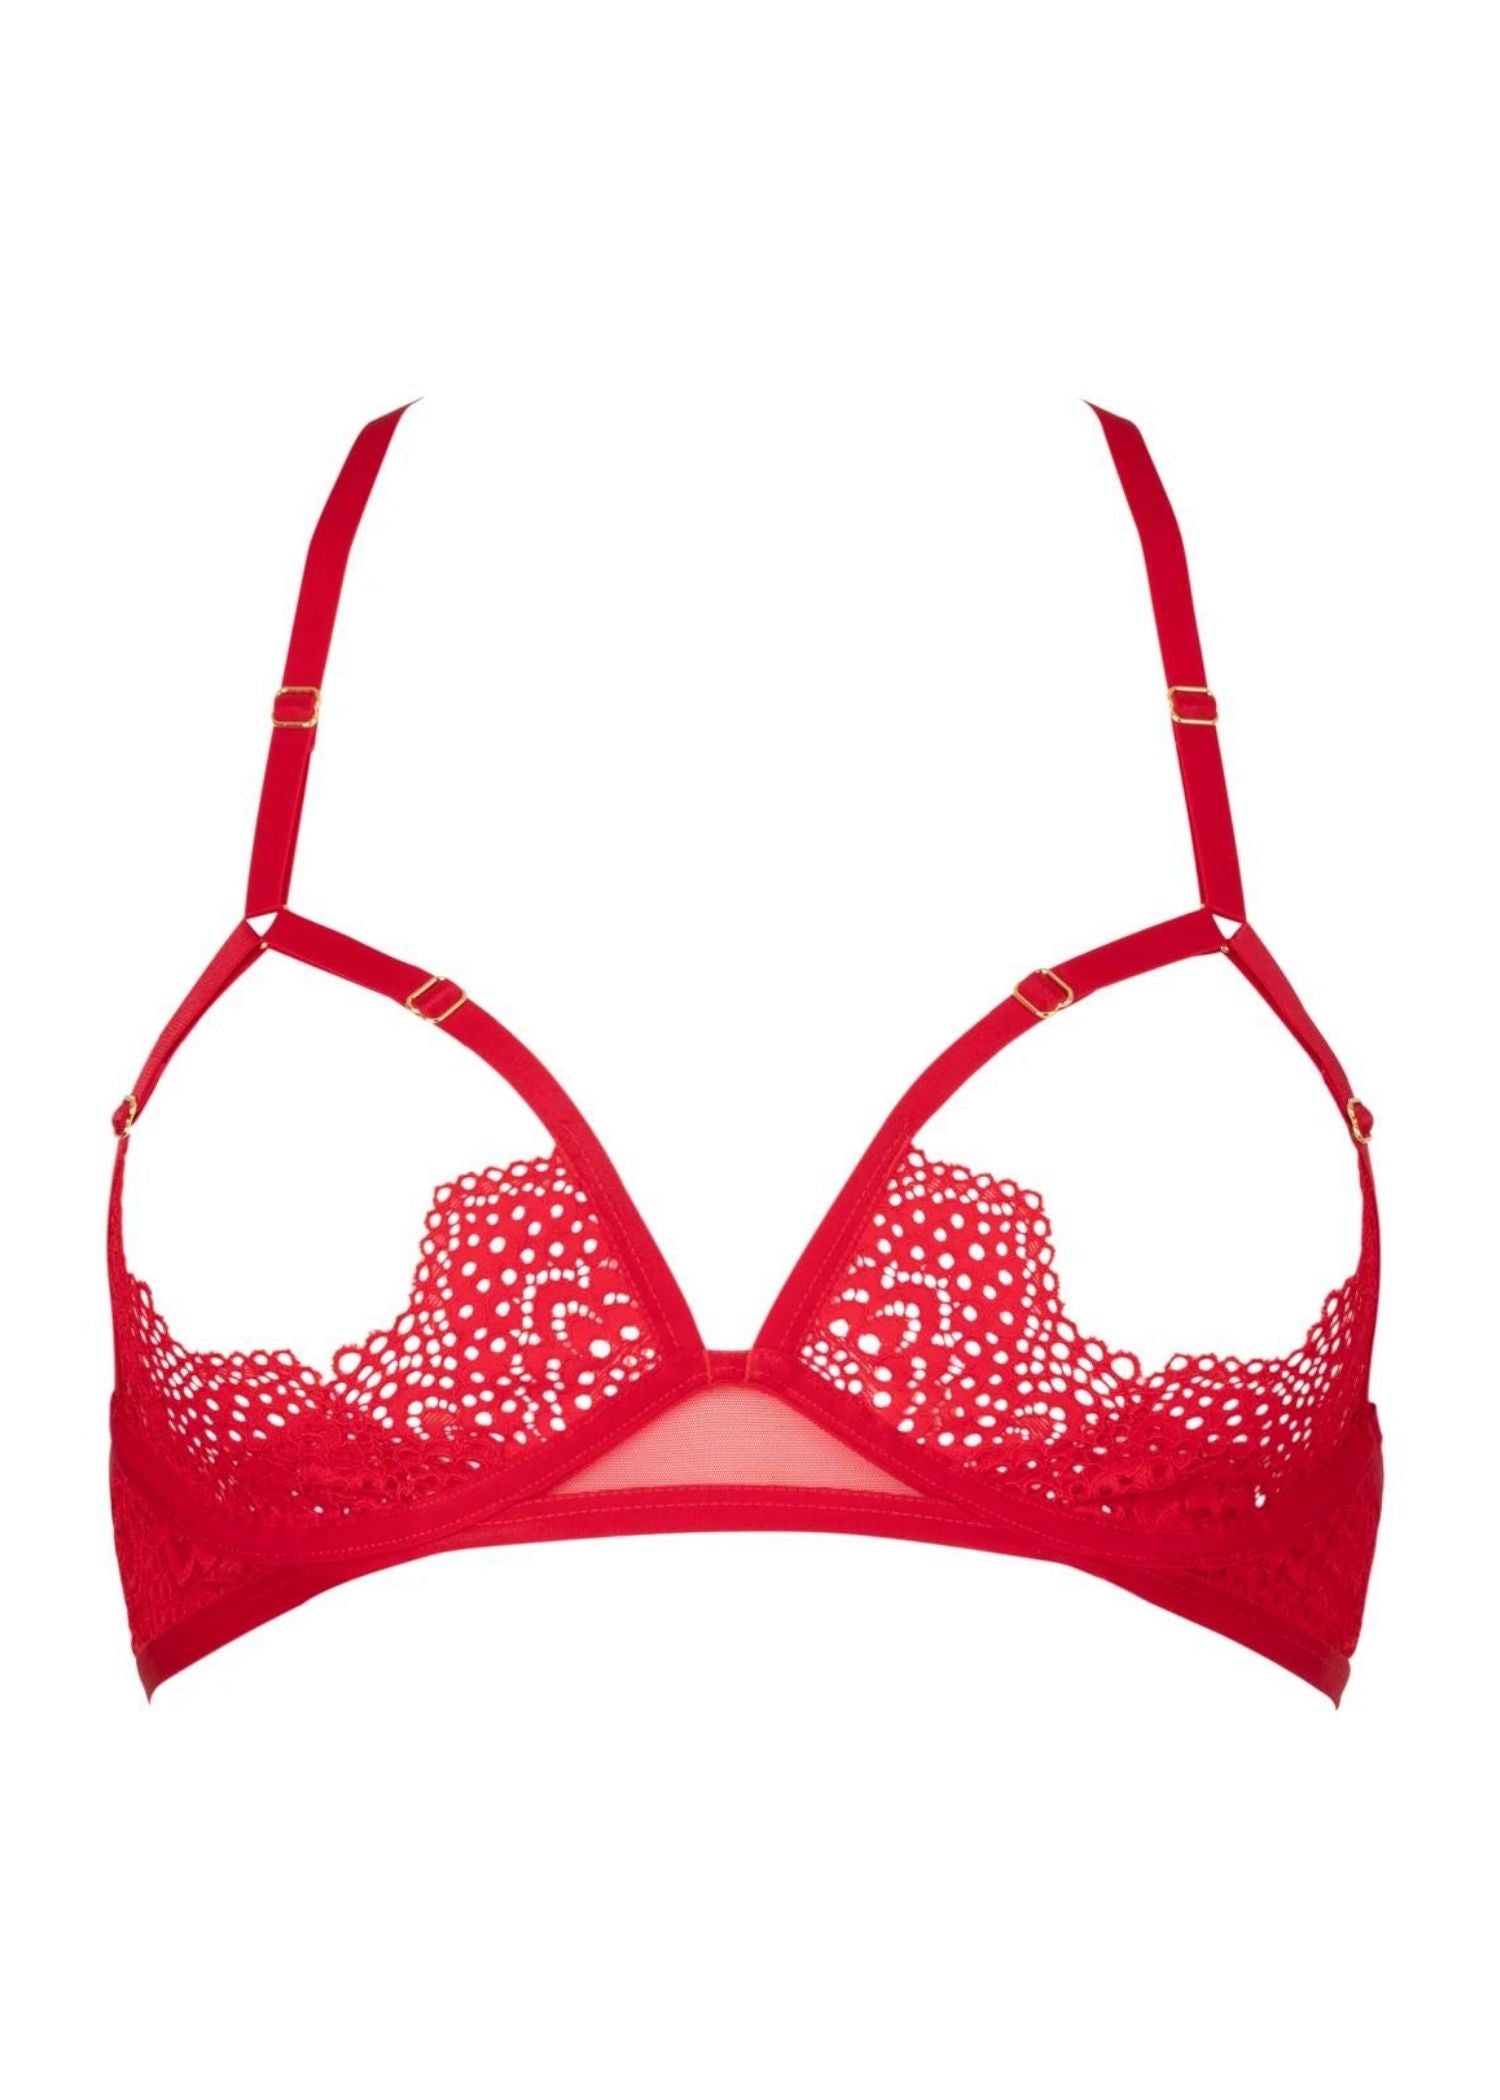 Atelier Amour Desire (Rouge) Open Cup Bra - Delicate Black Lace - Adjustable Straps | Avec Amour Sexy Lingerie